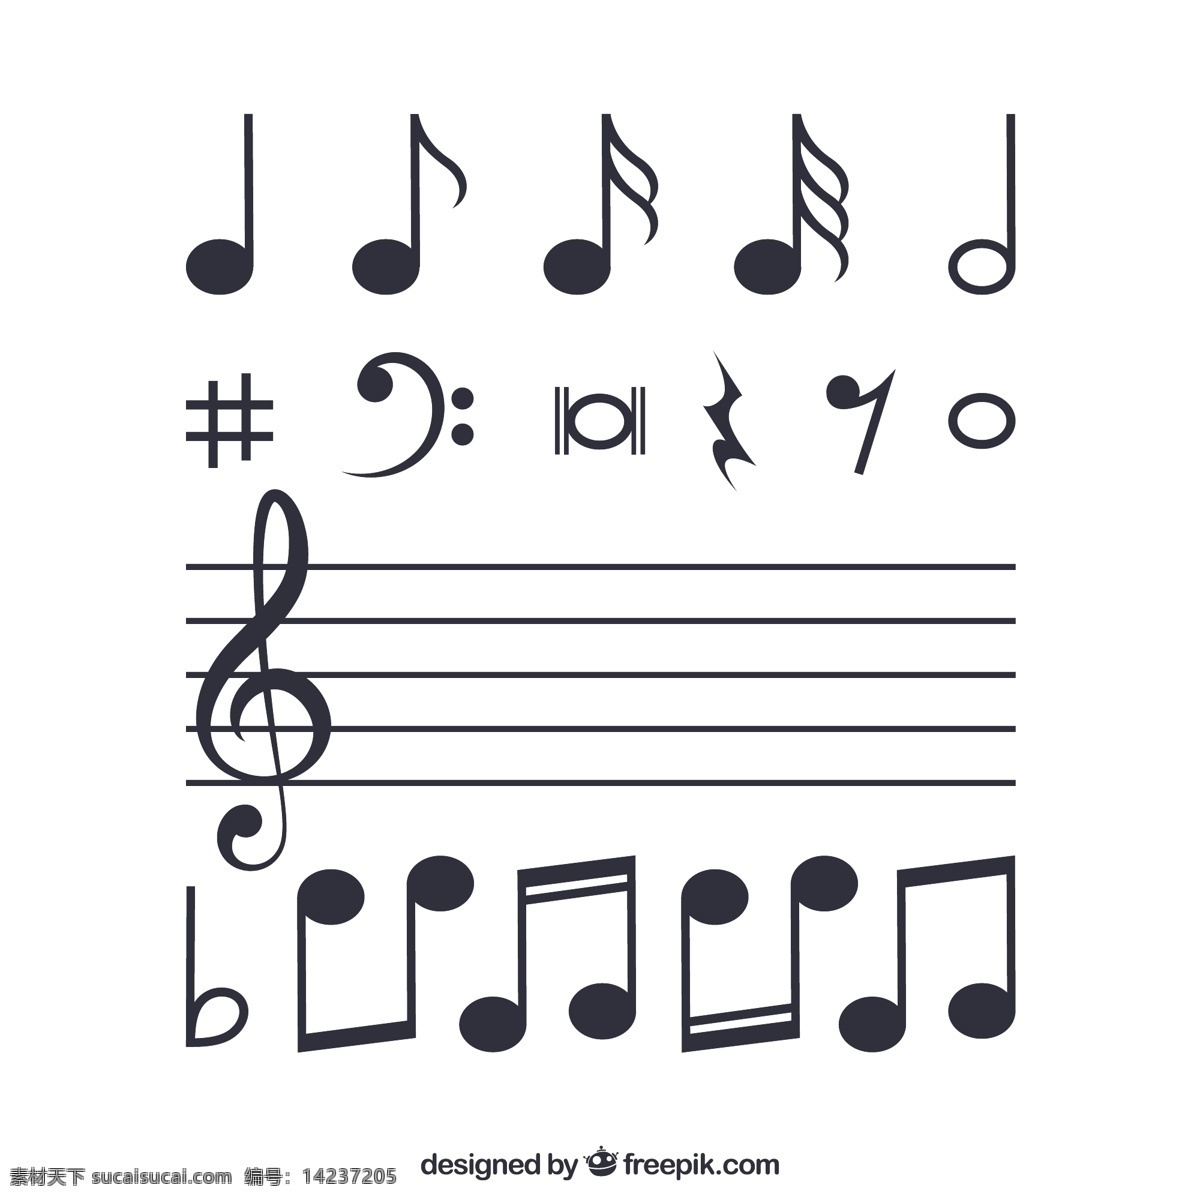 音乐 乐谱 音符 音 符号 五线谱 文化艺术 舞蹈音乐 平面素材